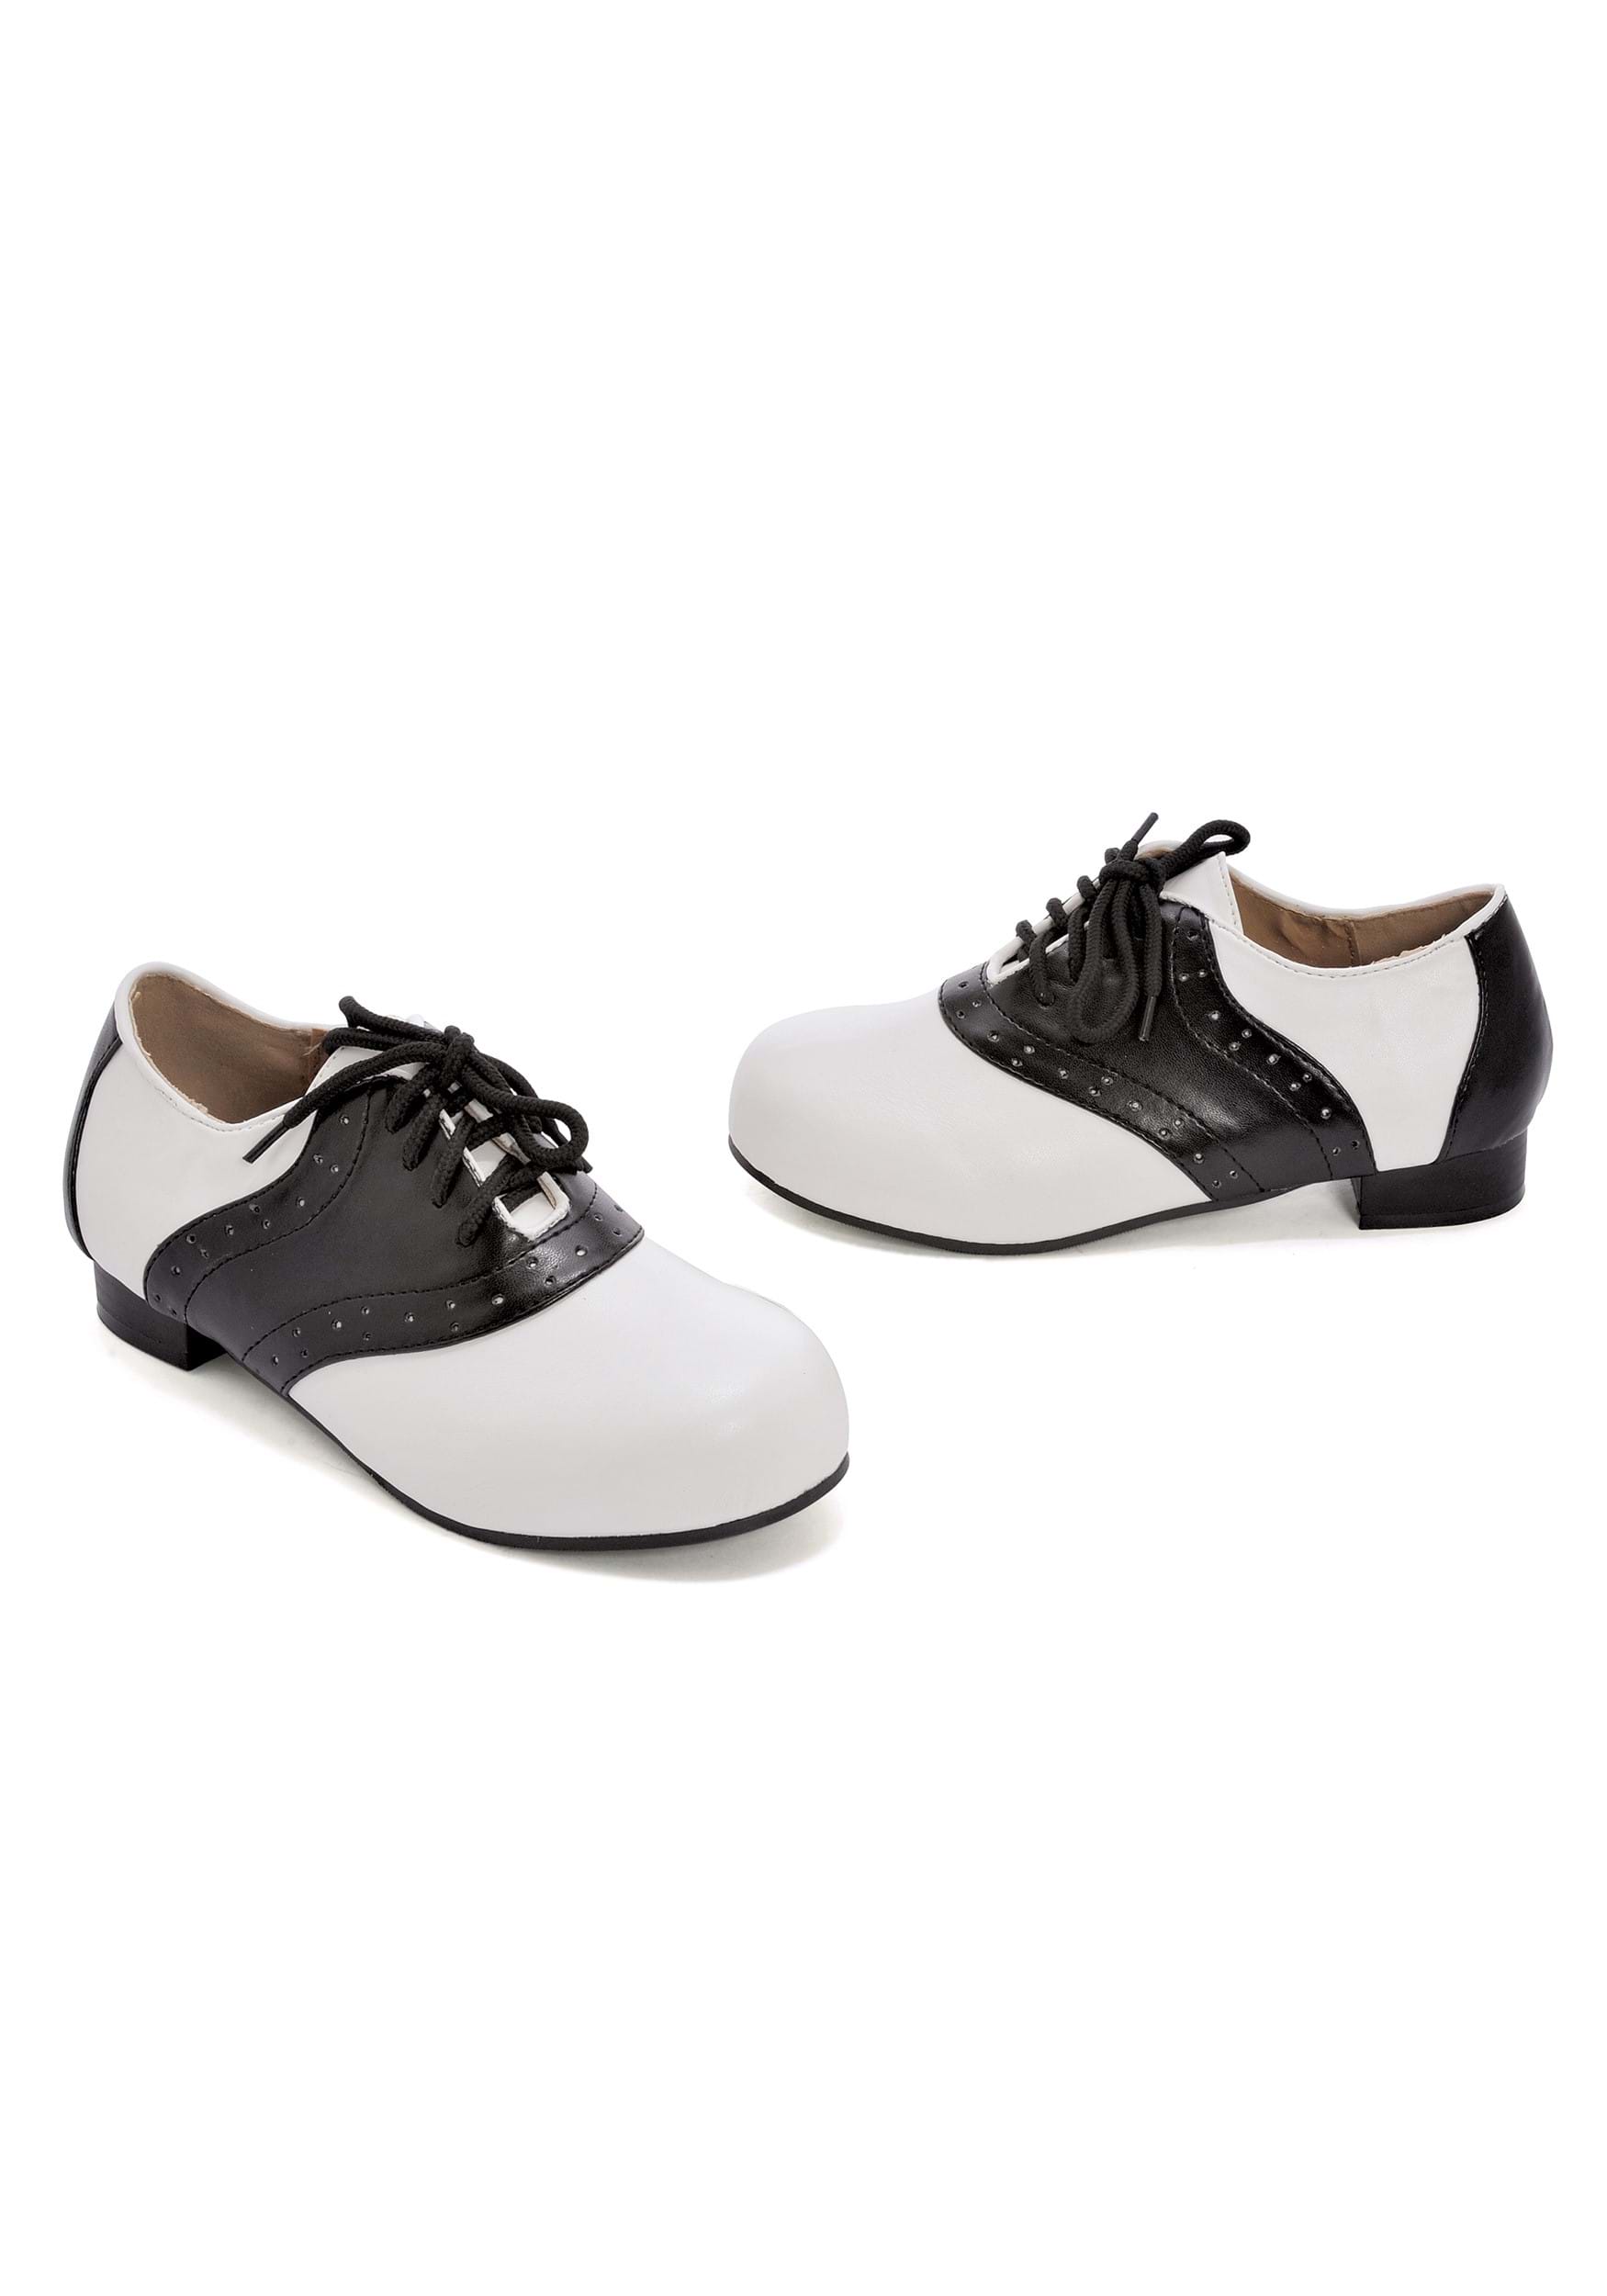 Black and White Saddle Girls Shoes